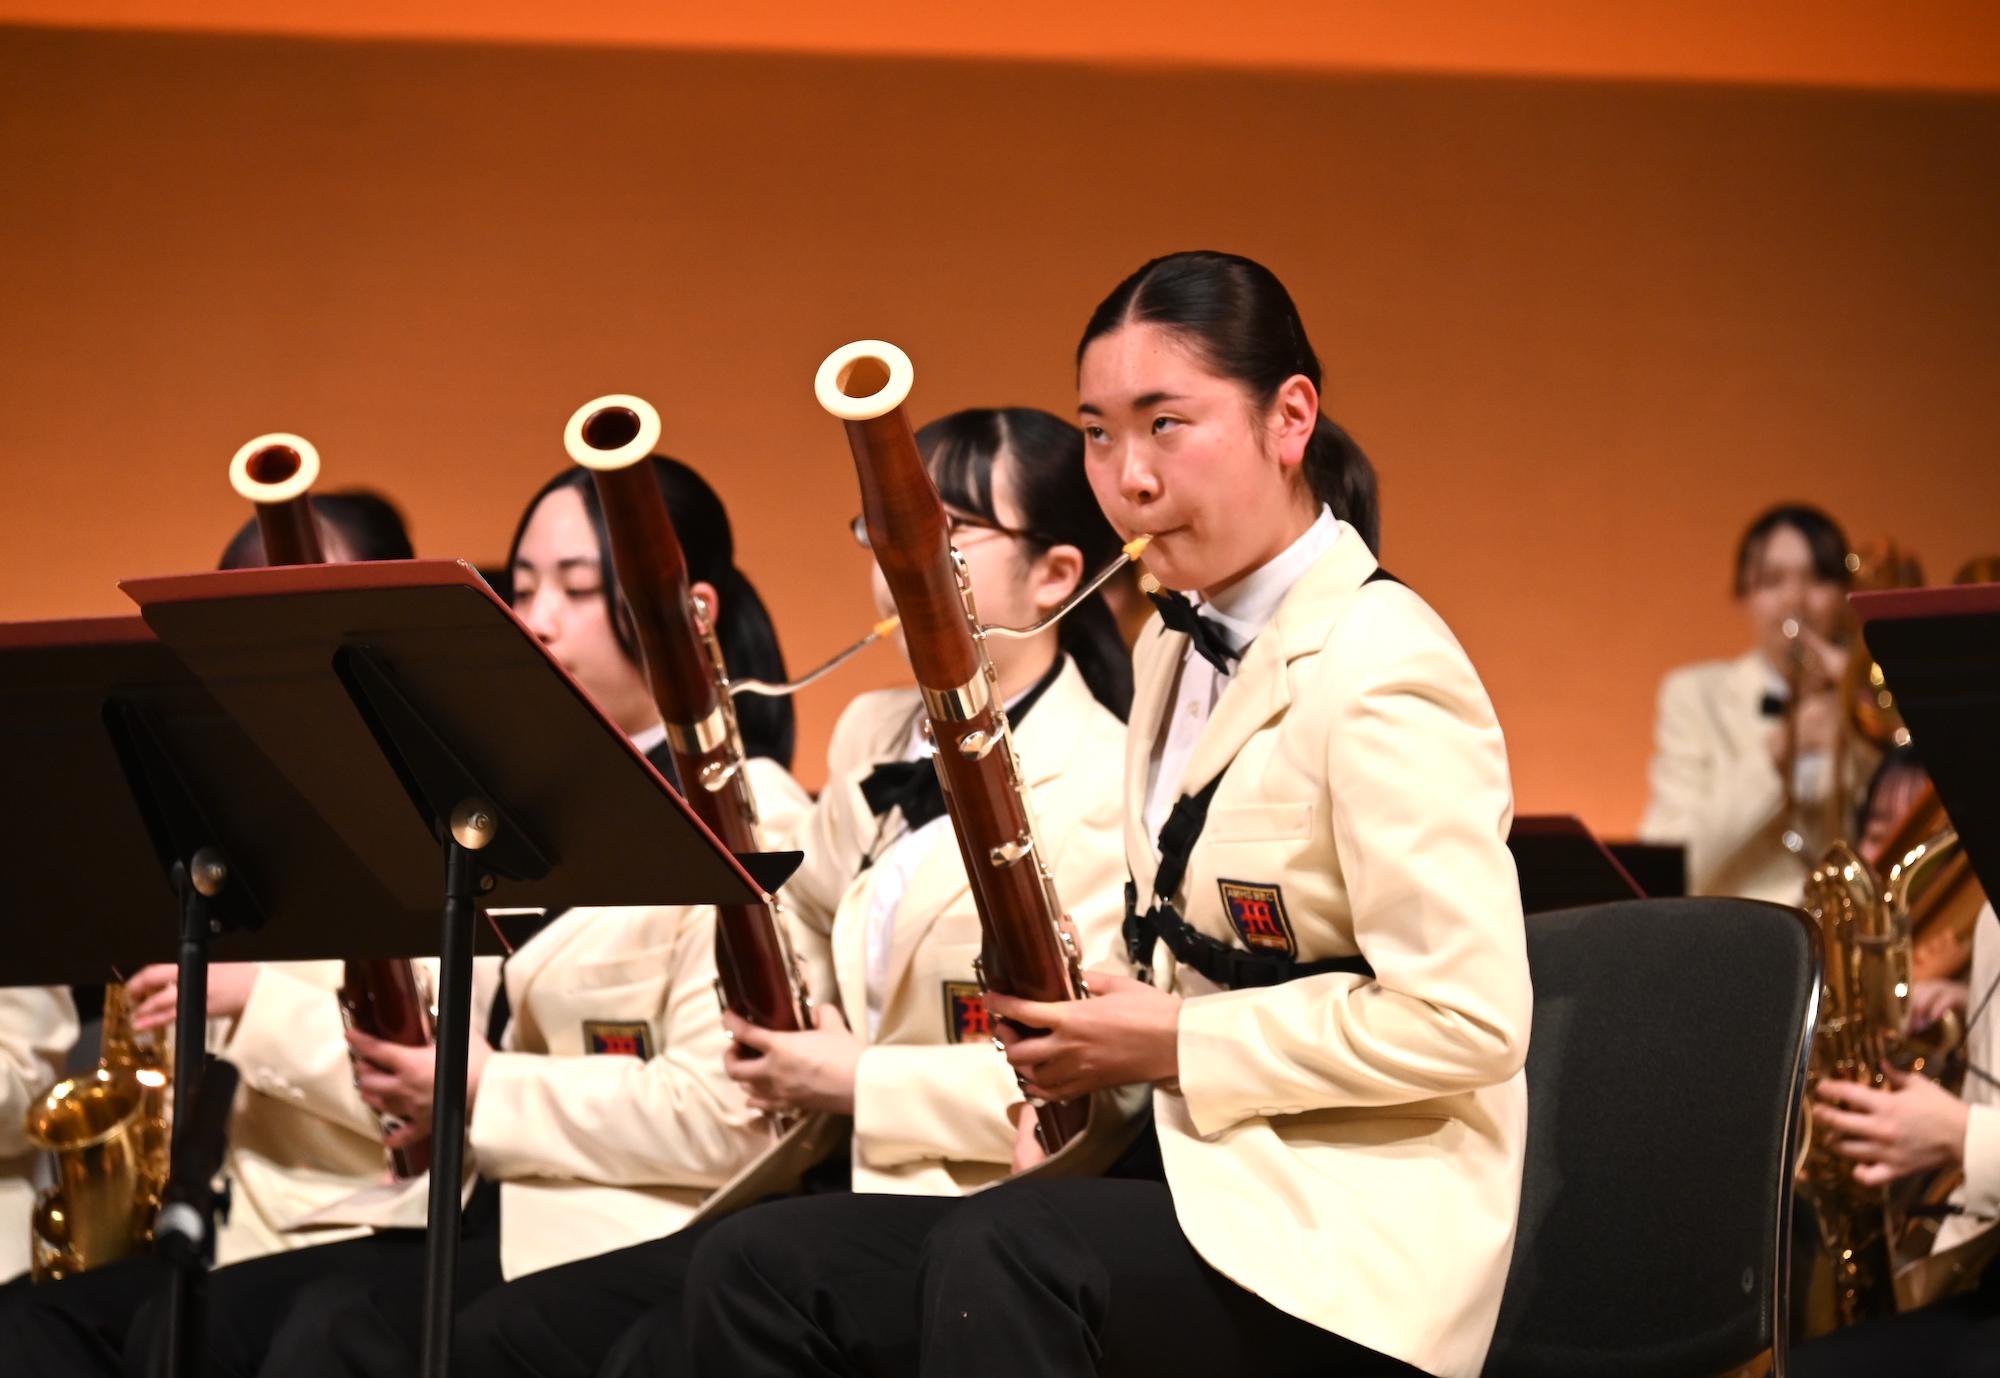 吹奏楽全国大会、コロナで17人欠場の名門・秋田南高校に起こった悲劇と奇跡 | Business Insider Japan